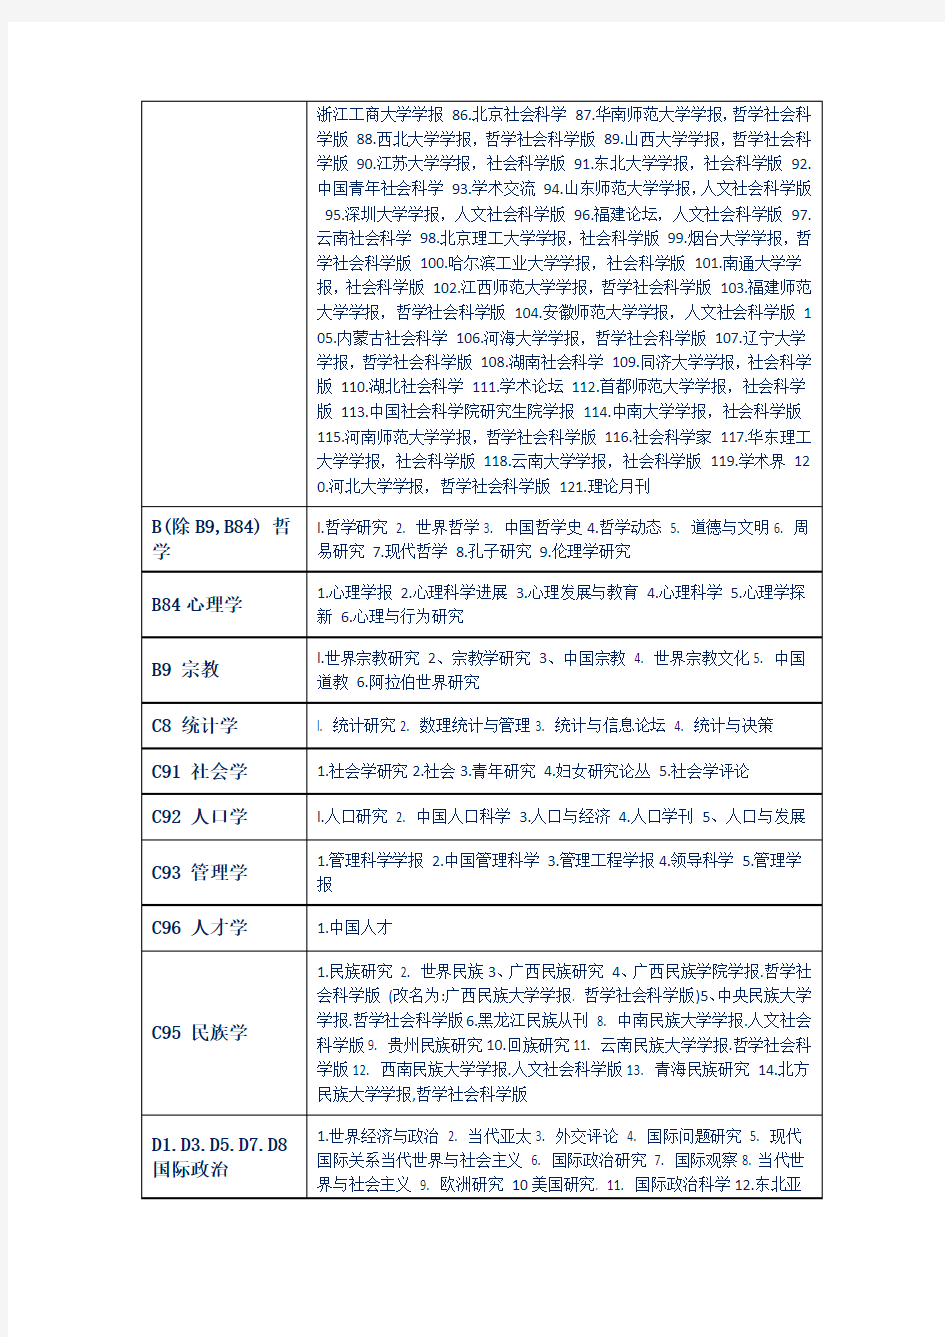 2019年版北大中文核心期刊目录(第八版) -完整版